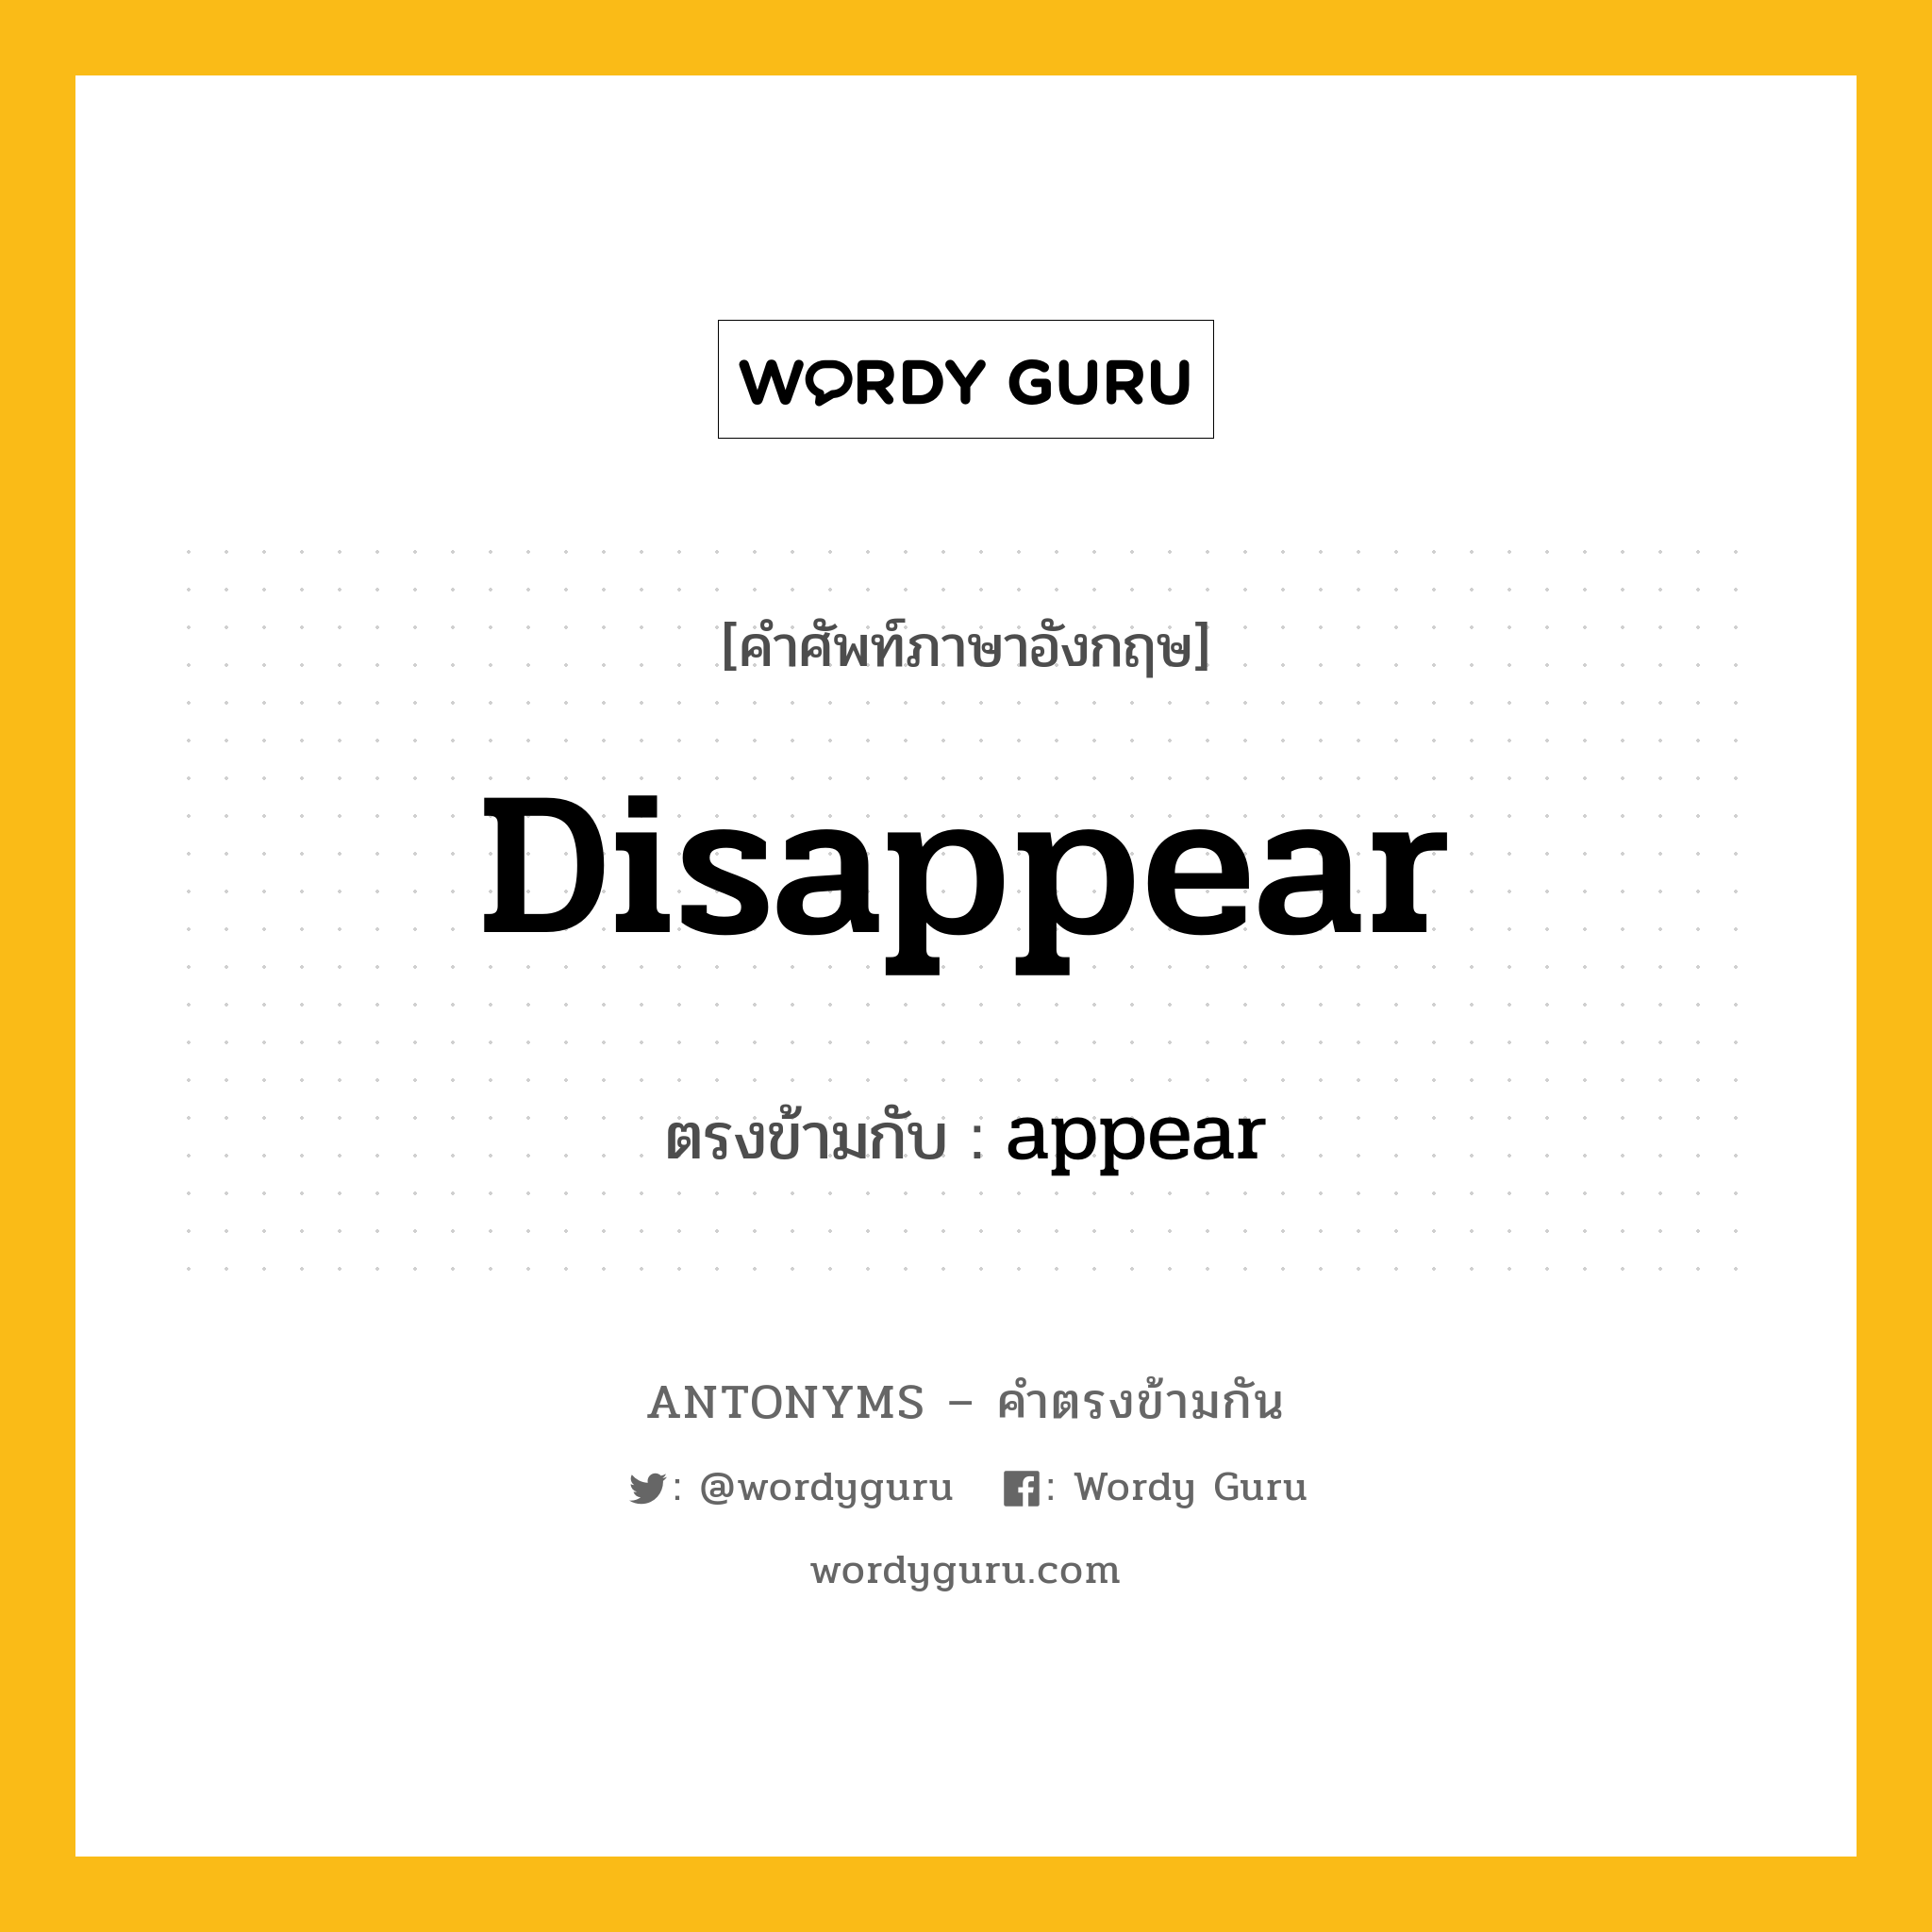 disappear เป็นคำตรงข้ามกับคำไหนบ้าง?, คำศัพท์ภาษาอังกฤษ disappear ตรงข้ามกับ appear หมวด appear